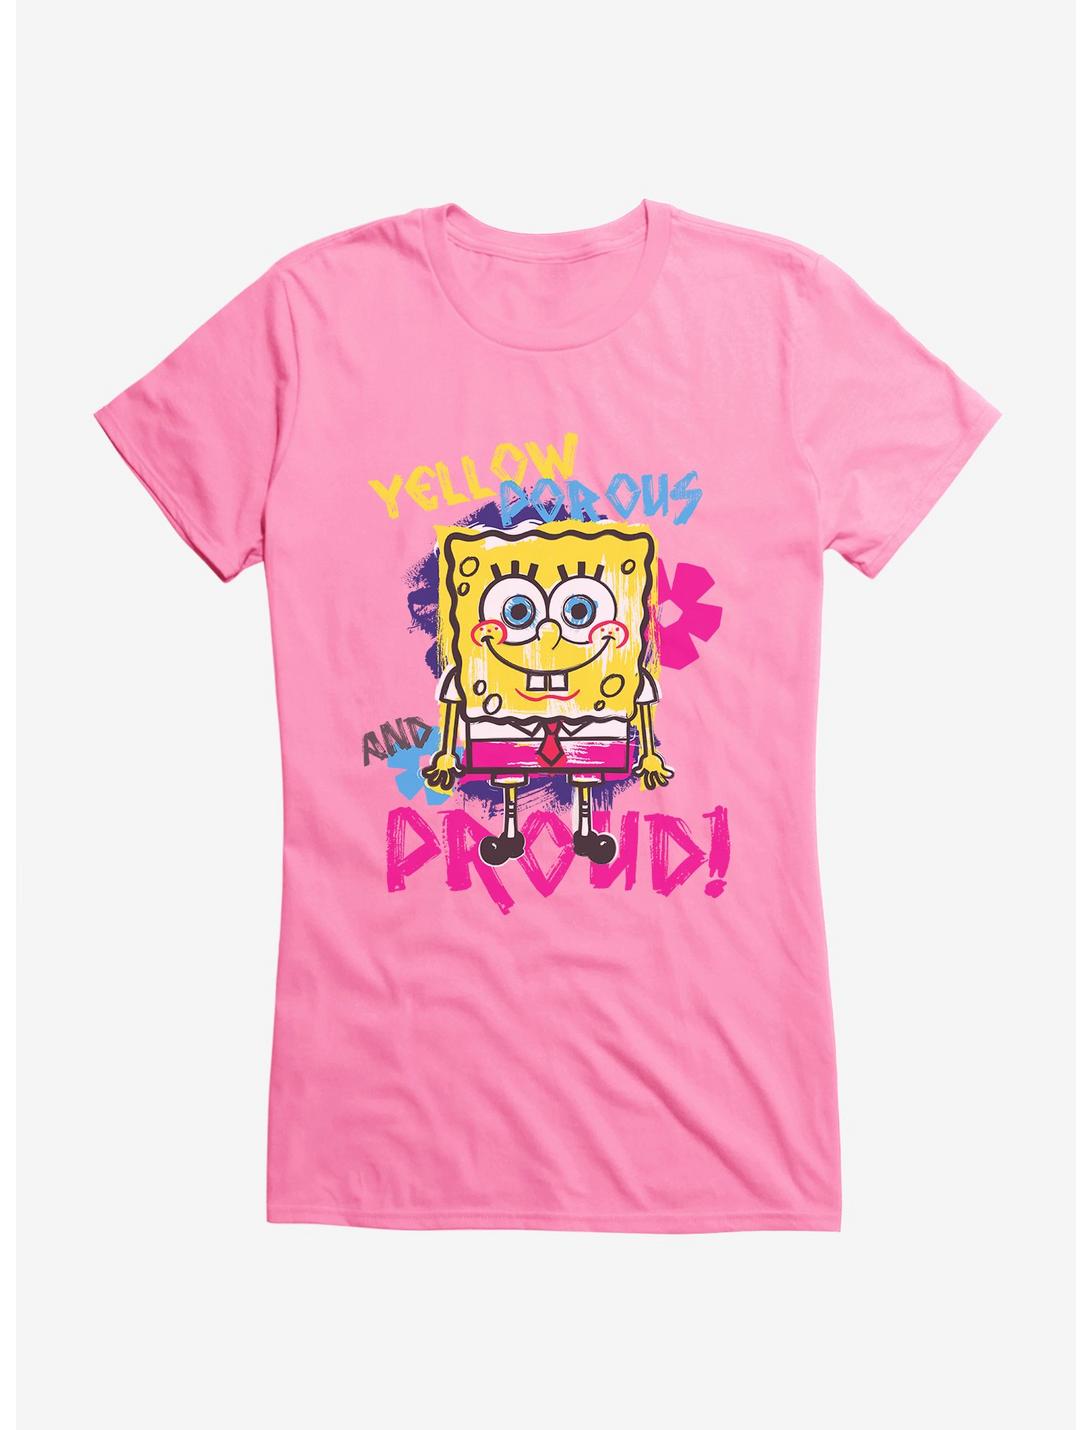 SpongeBob SquarePants Yellow, Porous  And Proud Girls T-Shirt, , hi-res